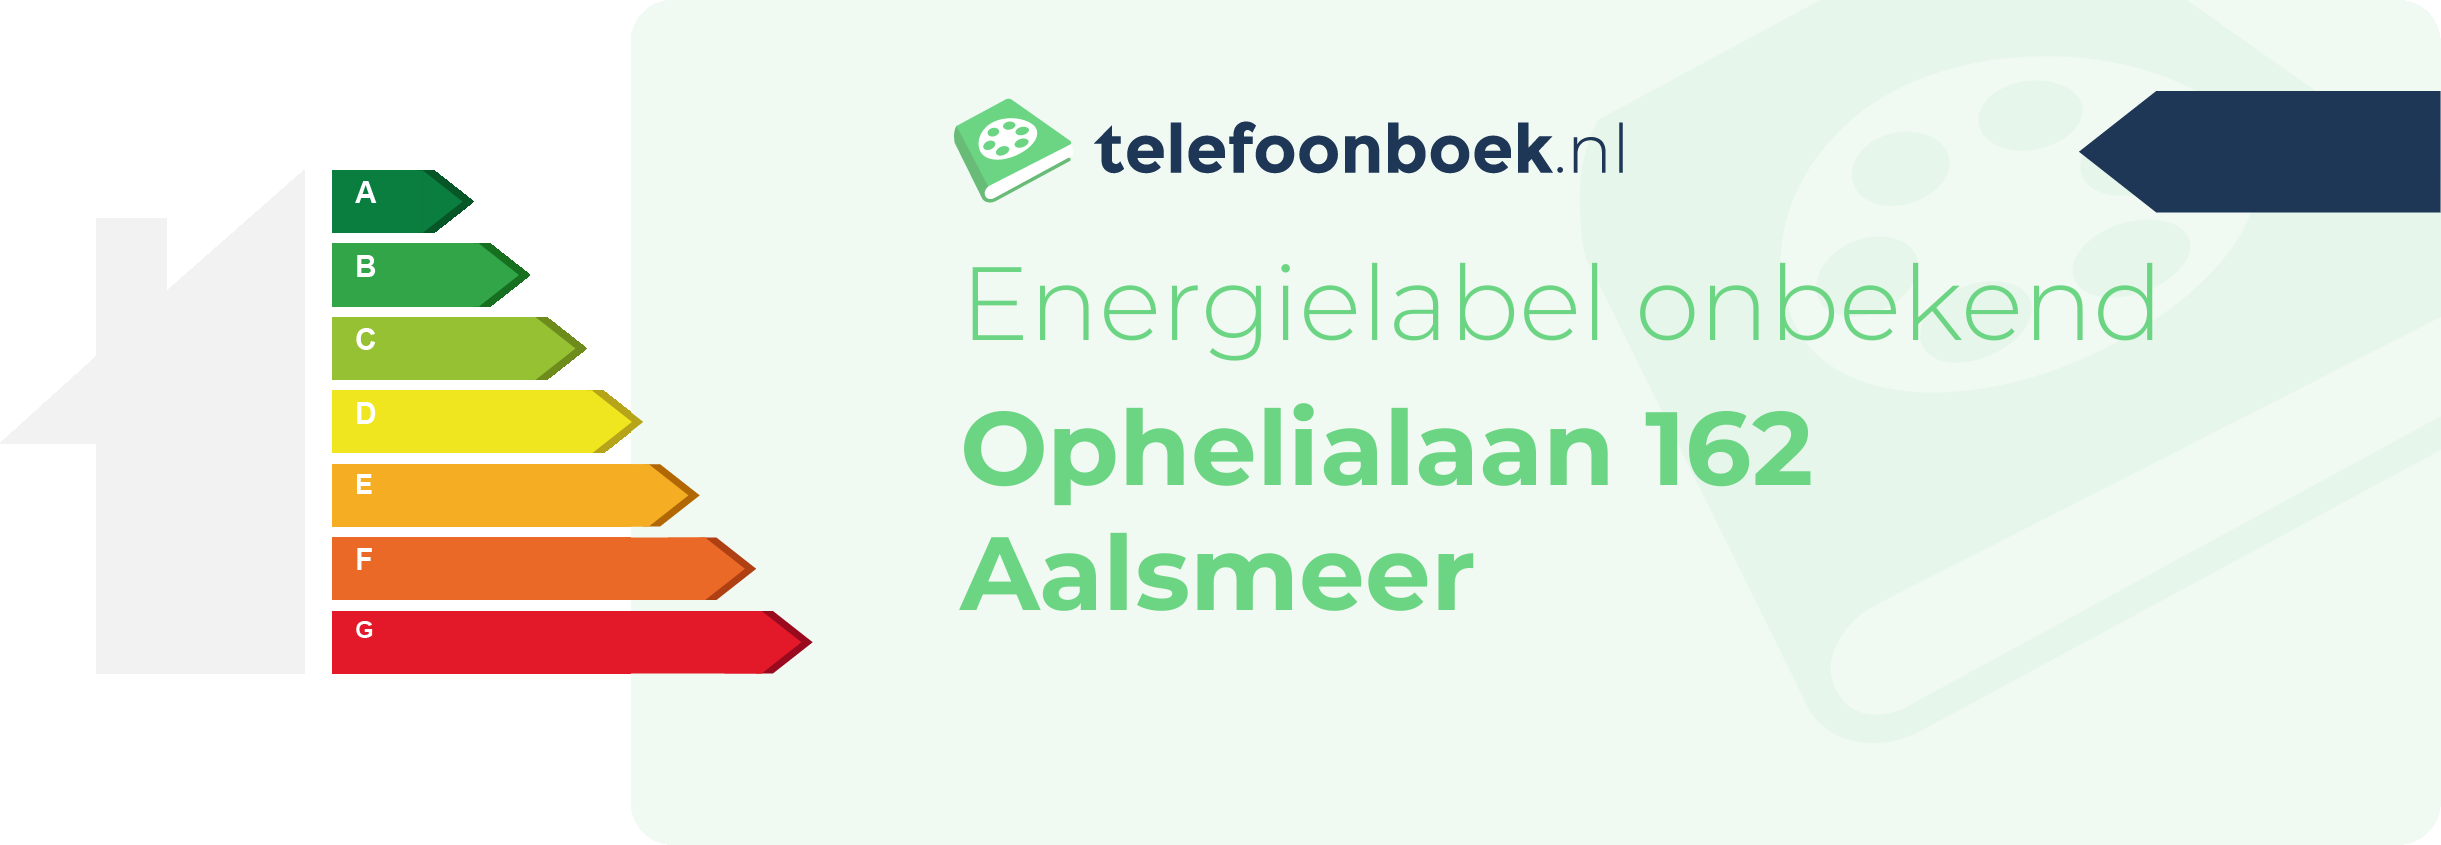 Energielabel Ophelialaan 162 Aalsmeer